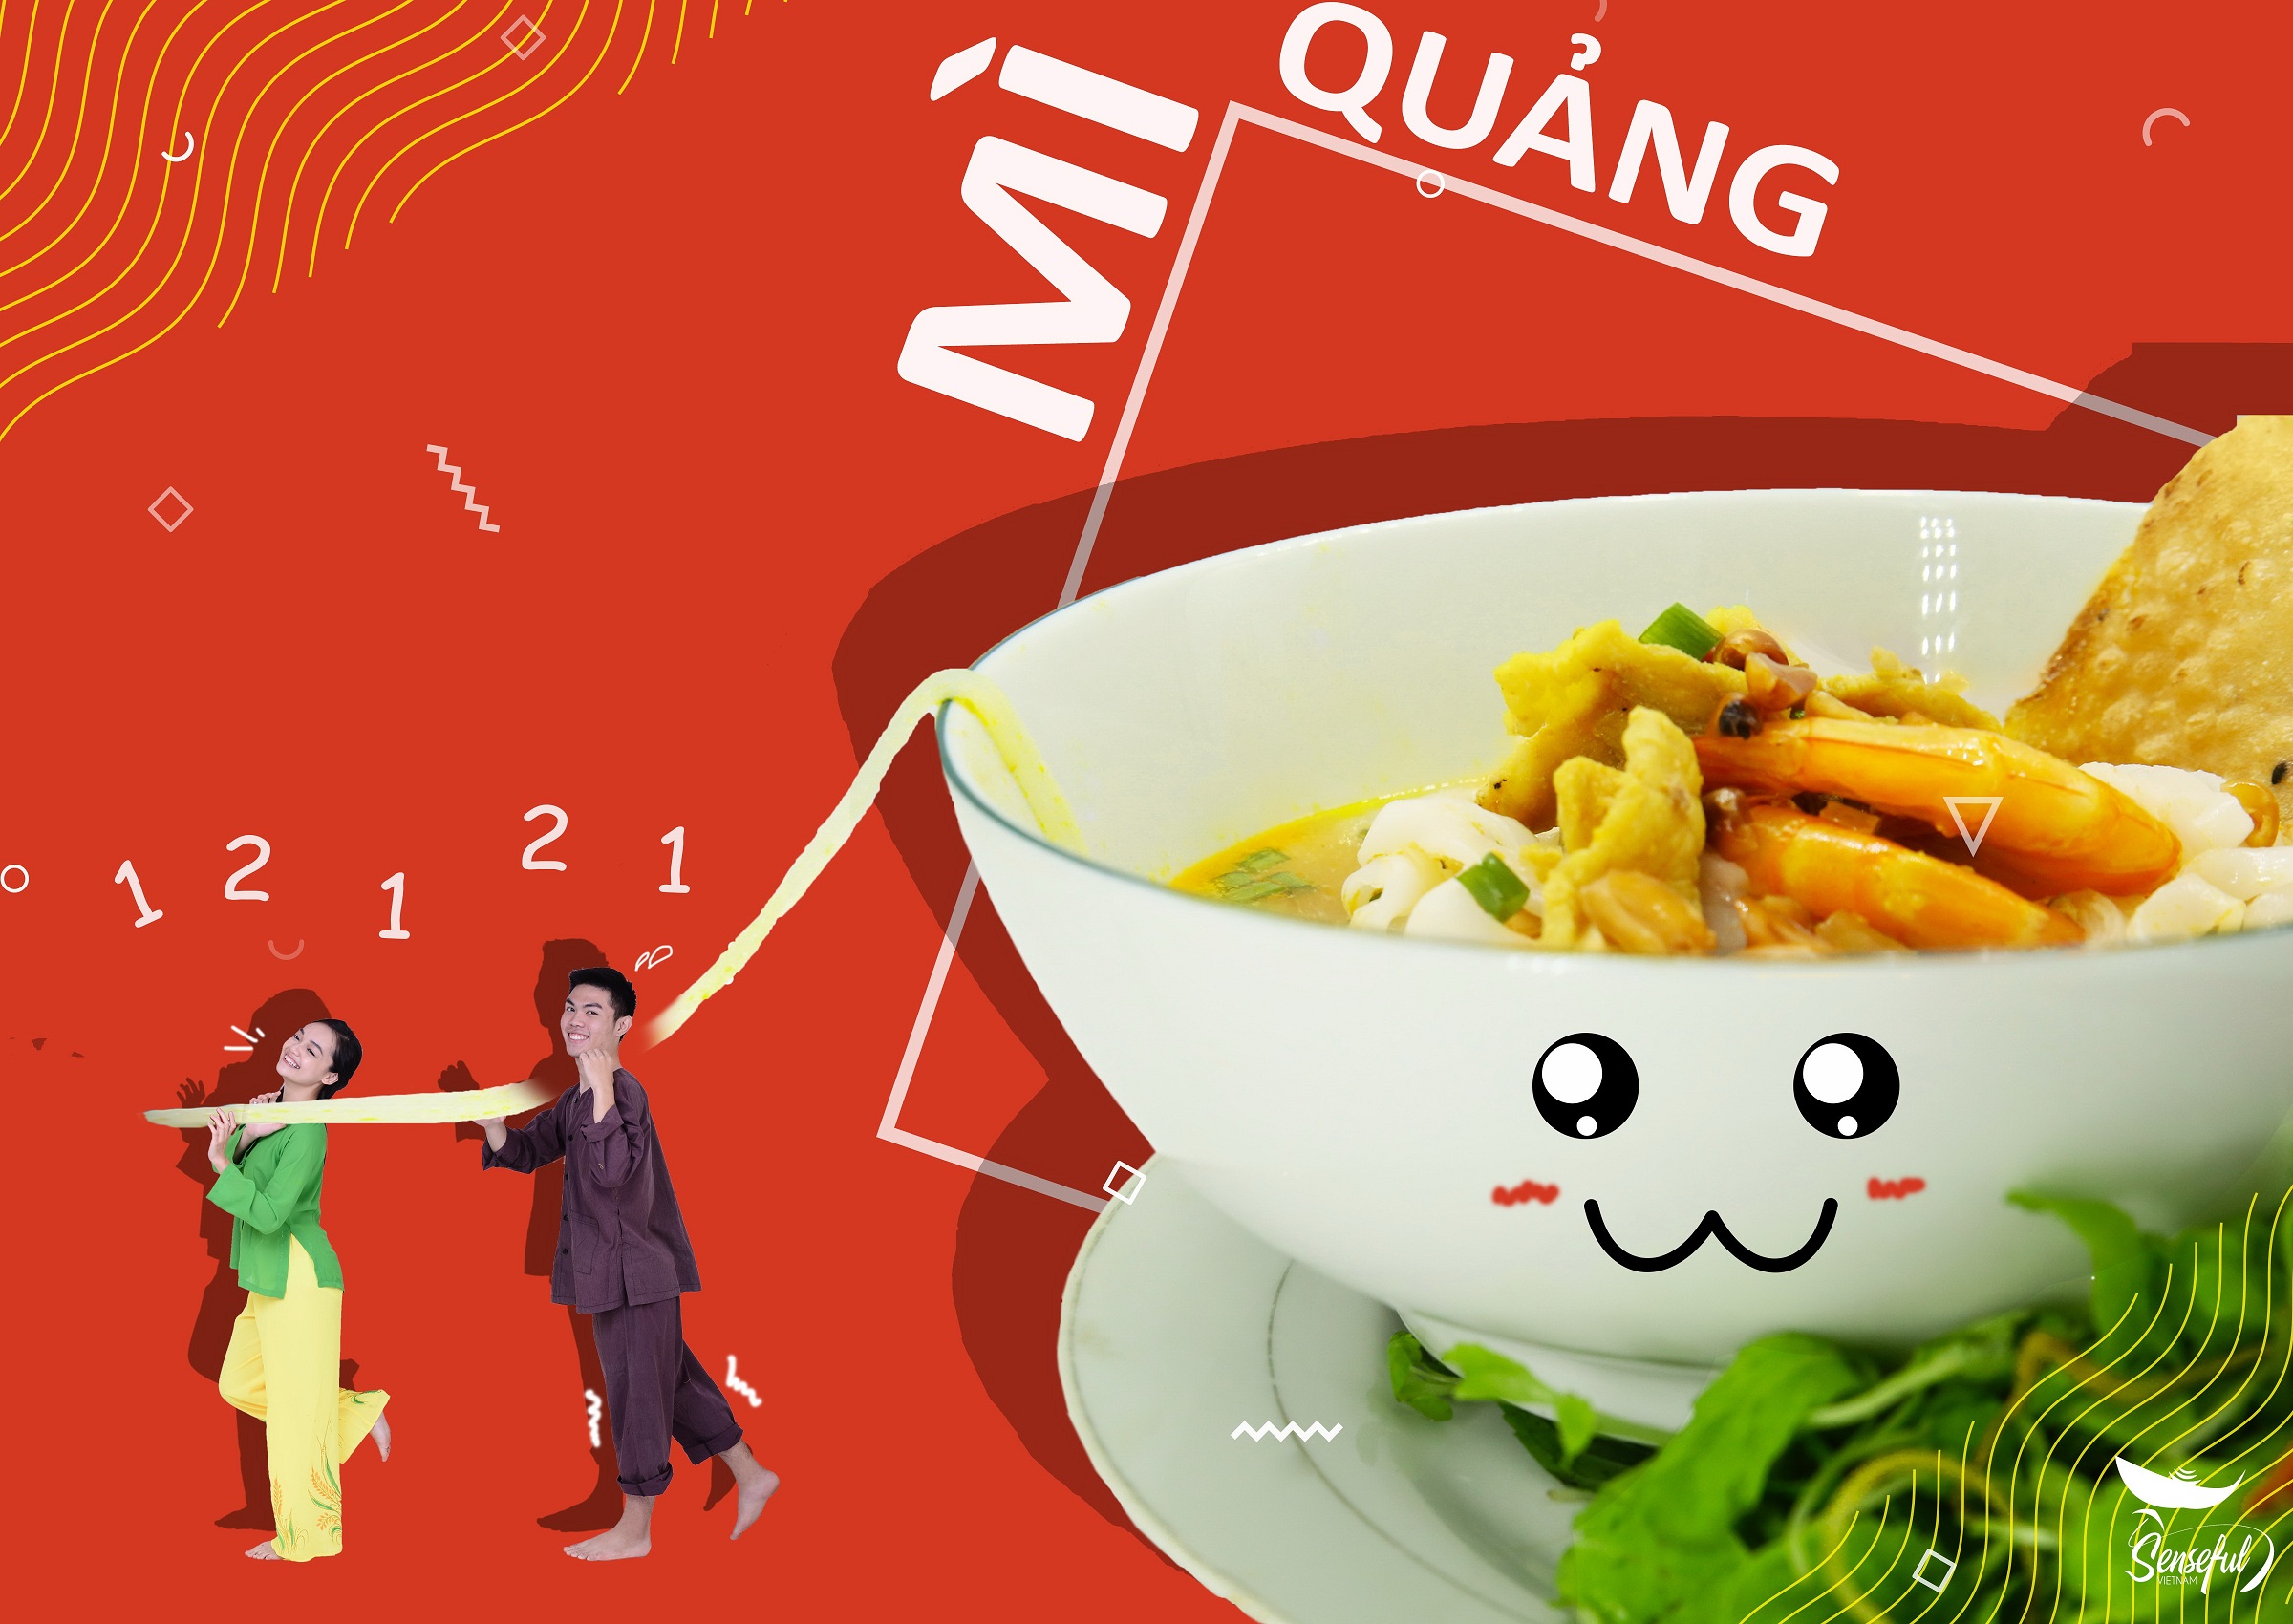 Mi Quang (Quang-style noodle soup)